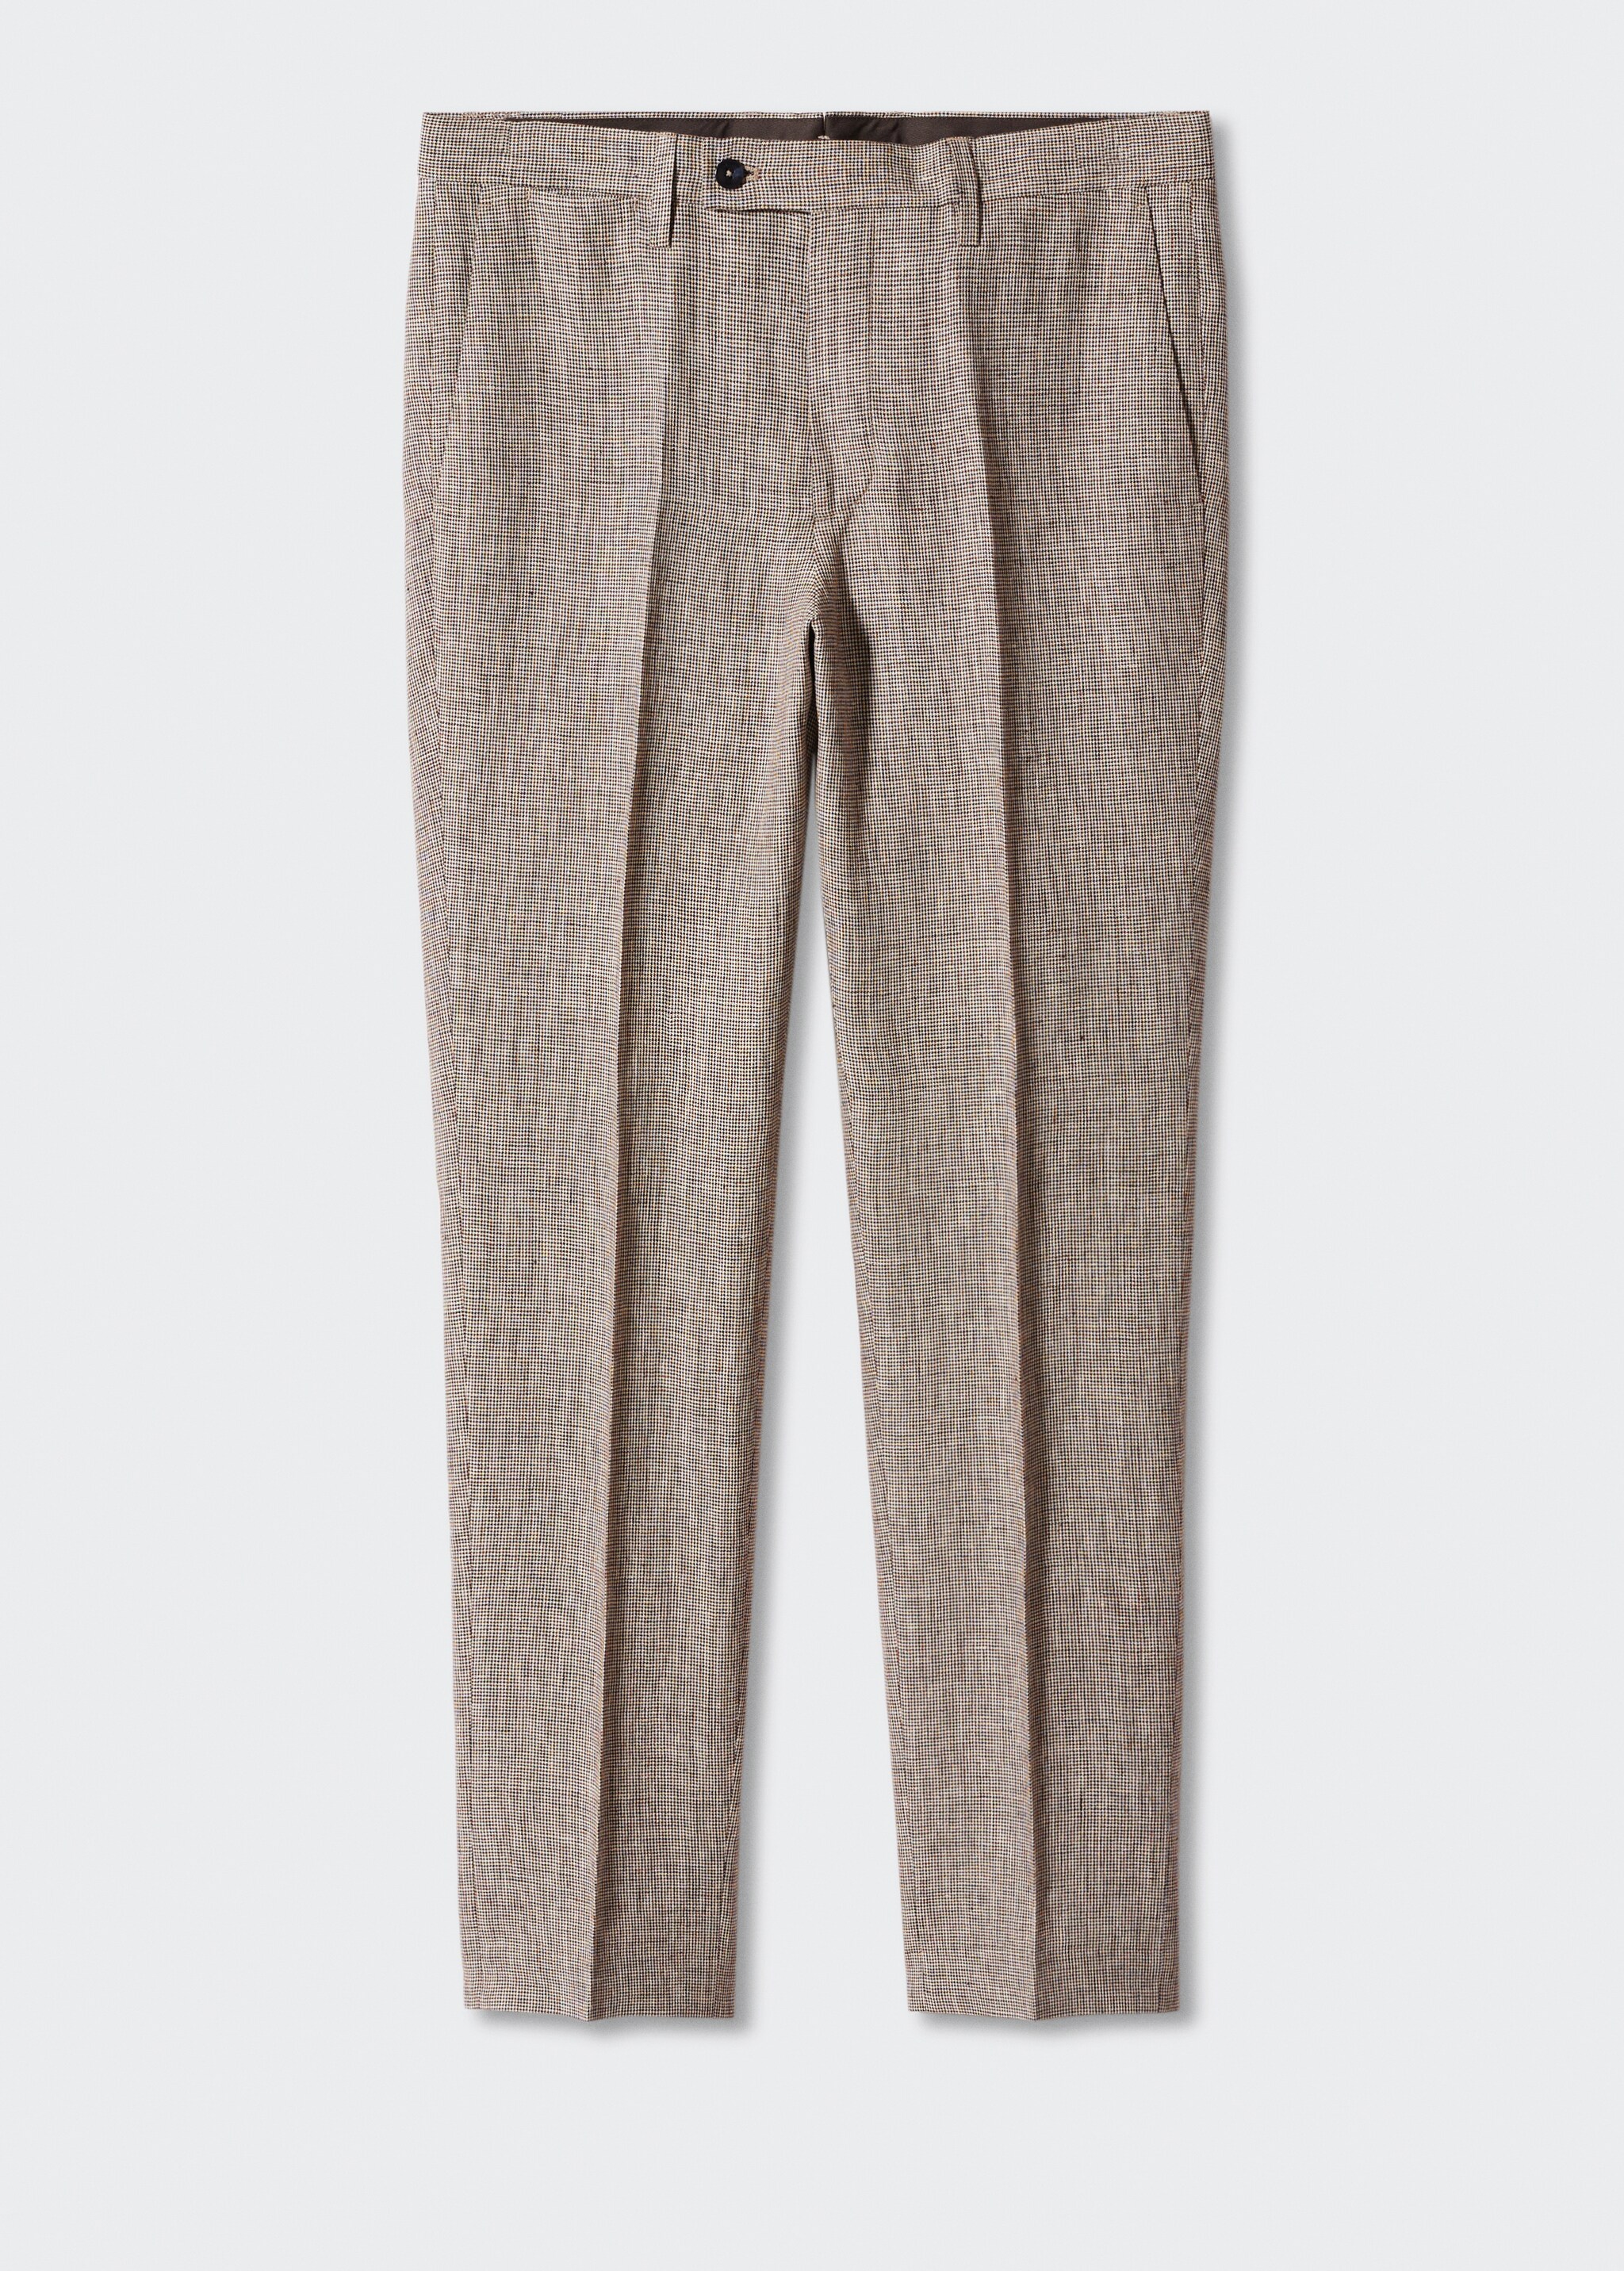 Pantalón traje 100% lino - Artículo sin modelo